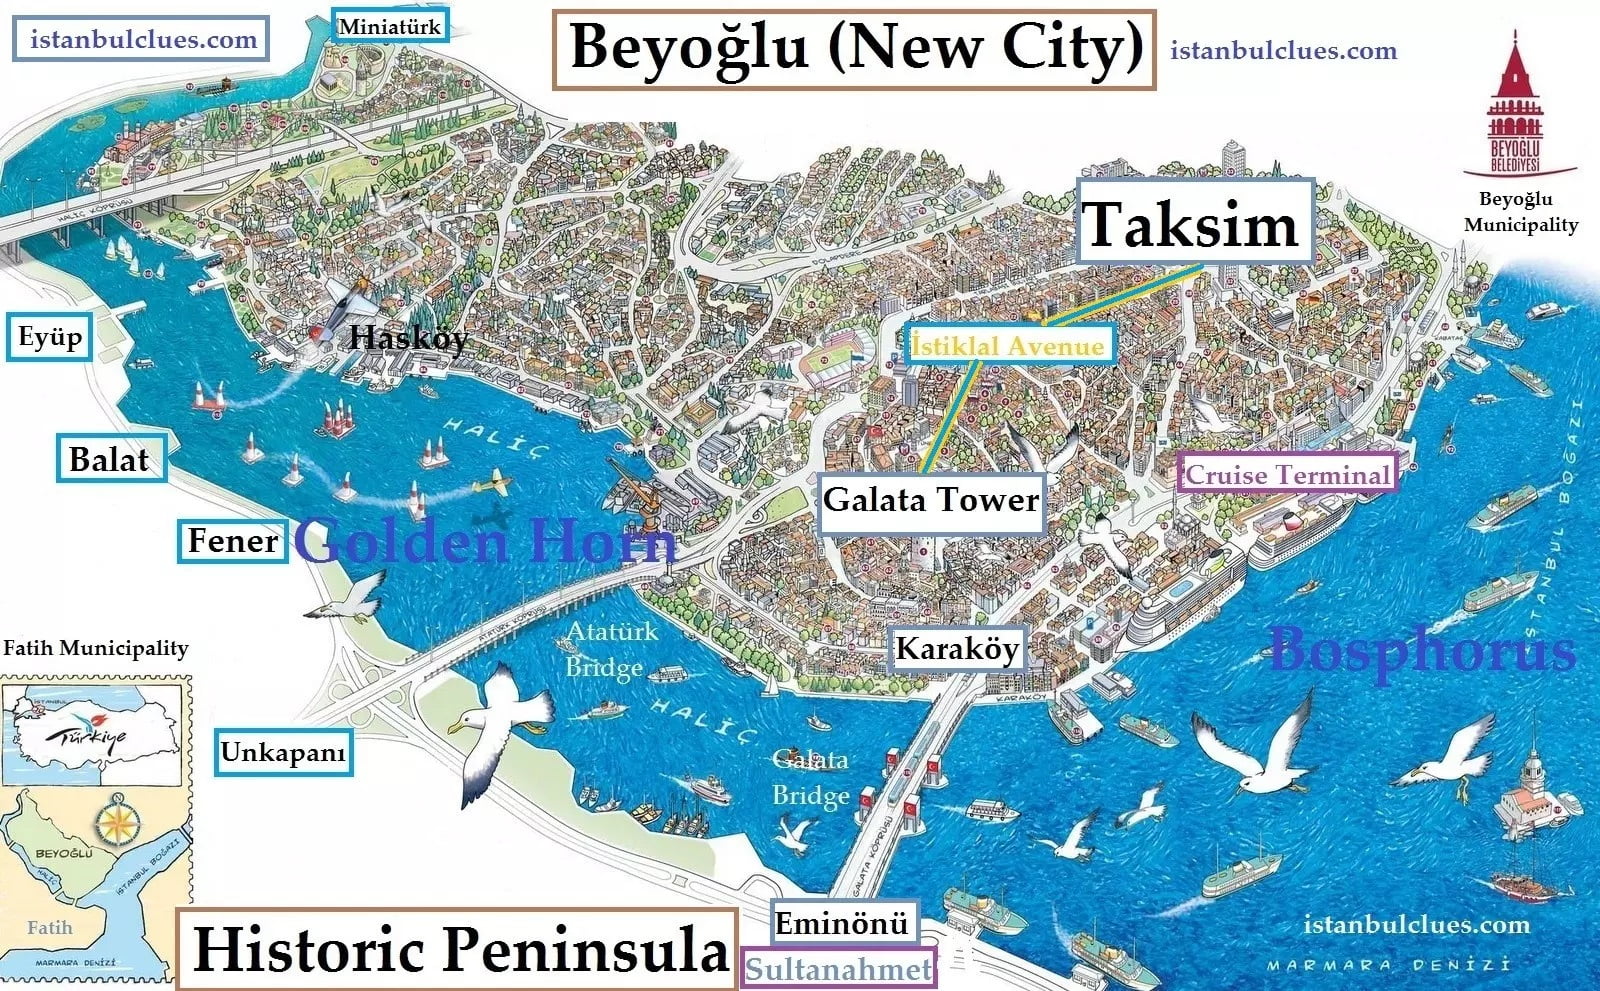 أين تقيم في اسطنبول 2021 و2022